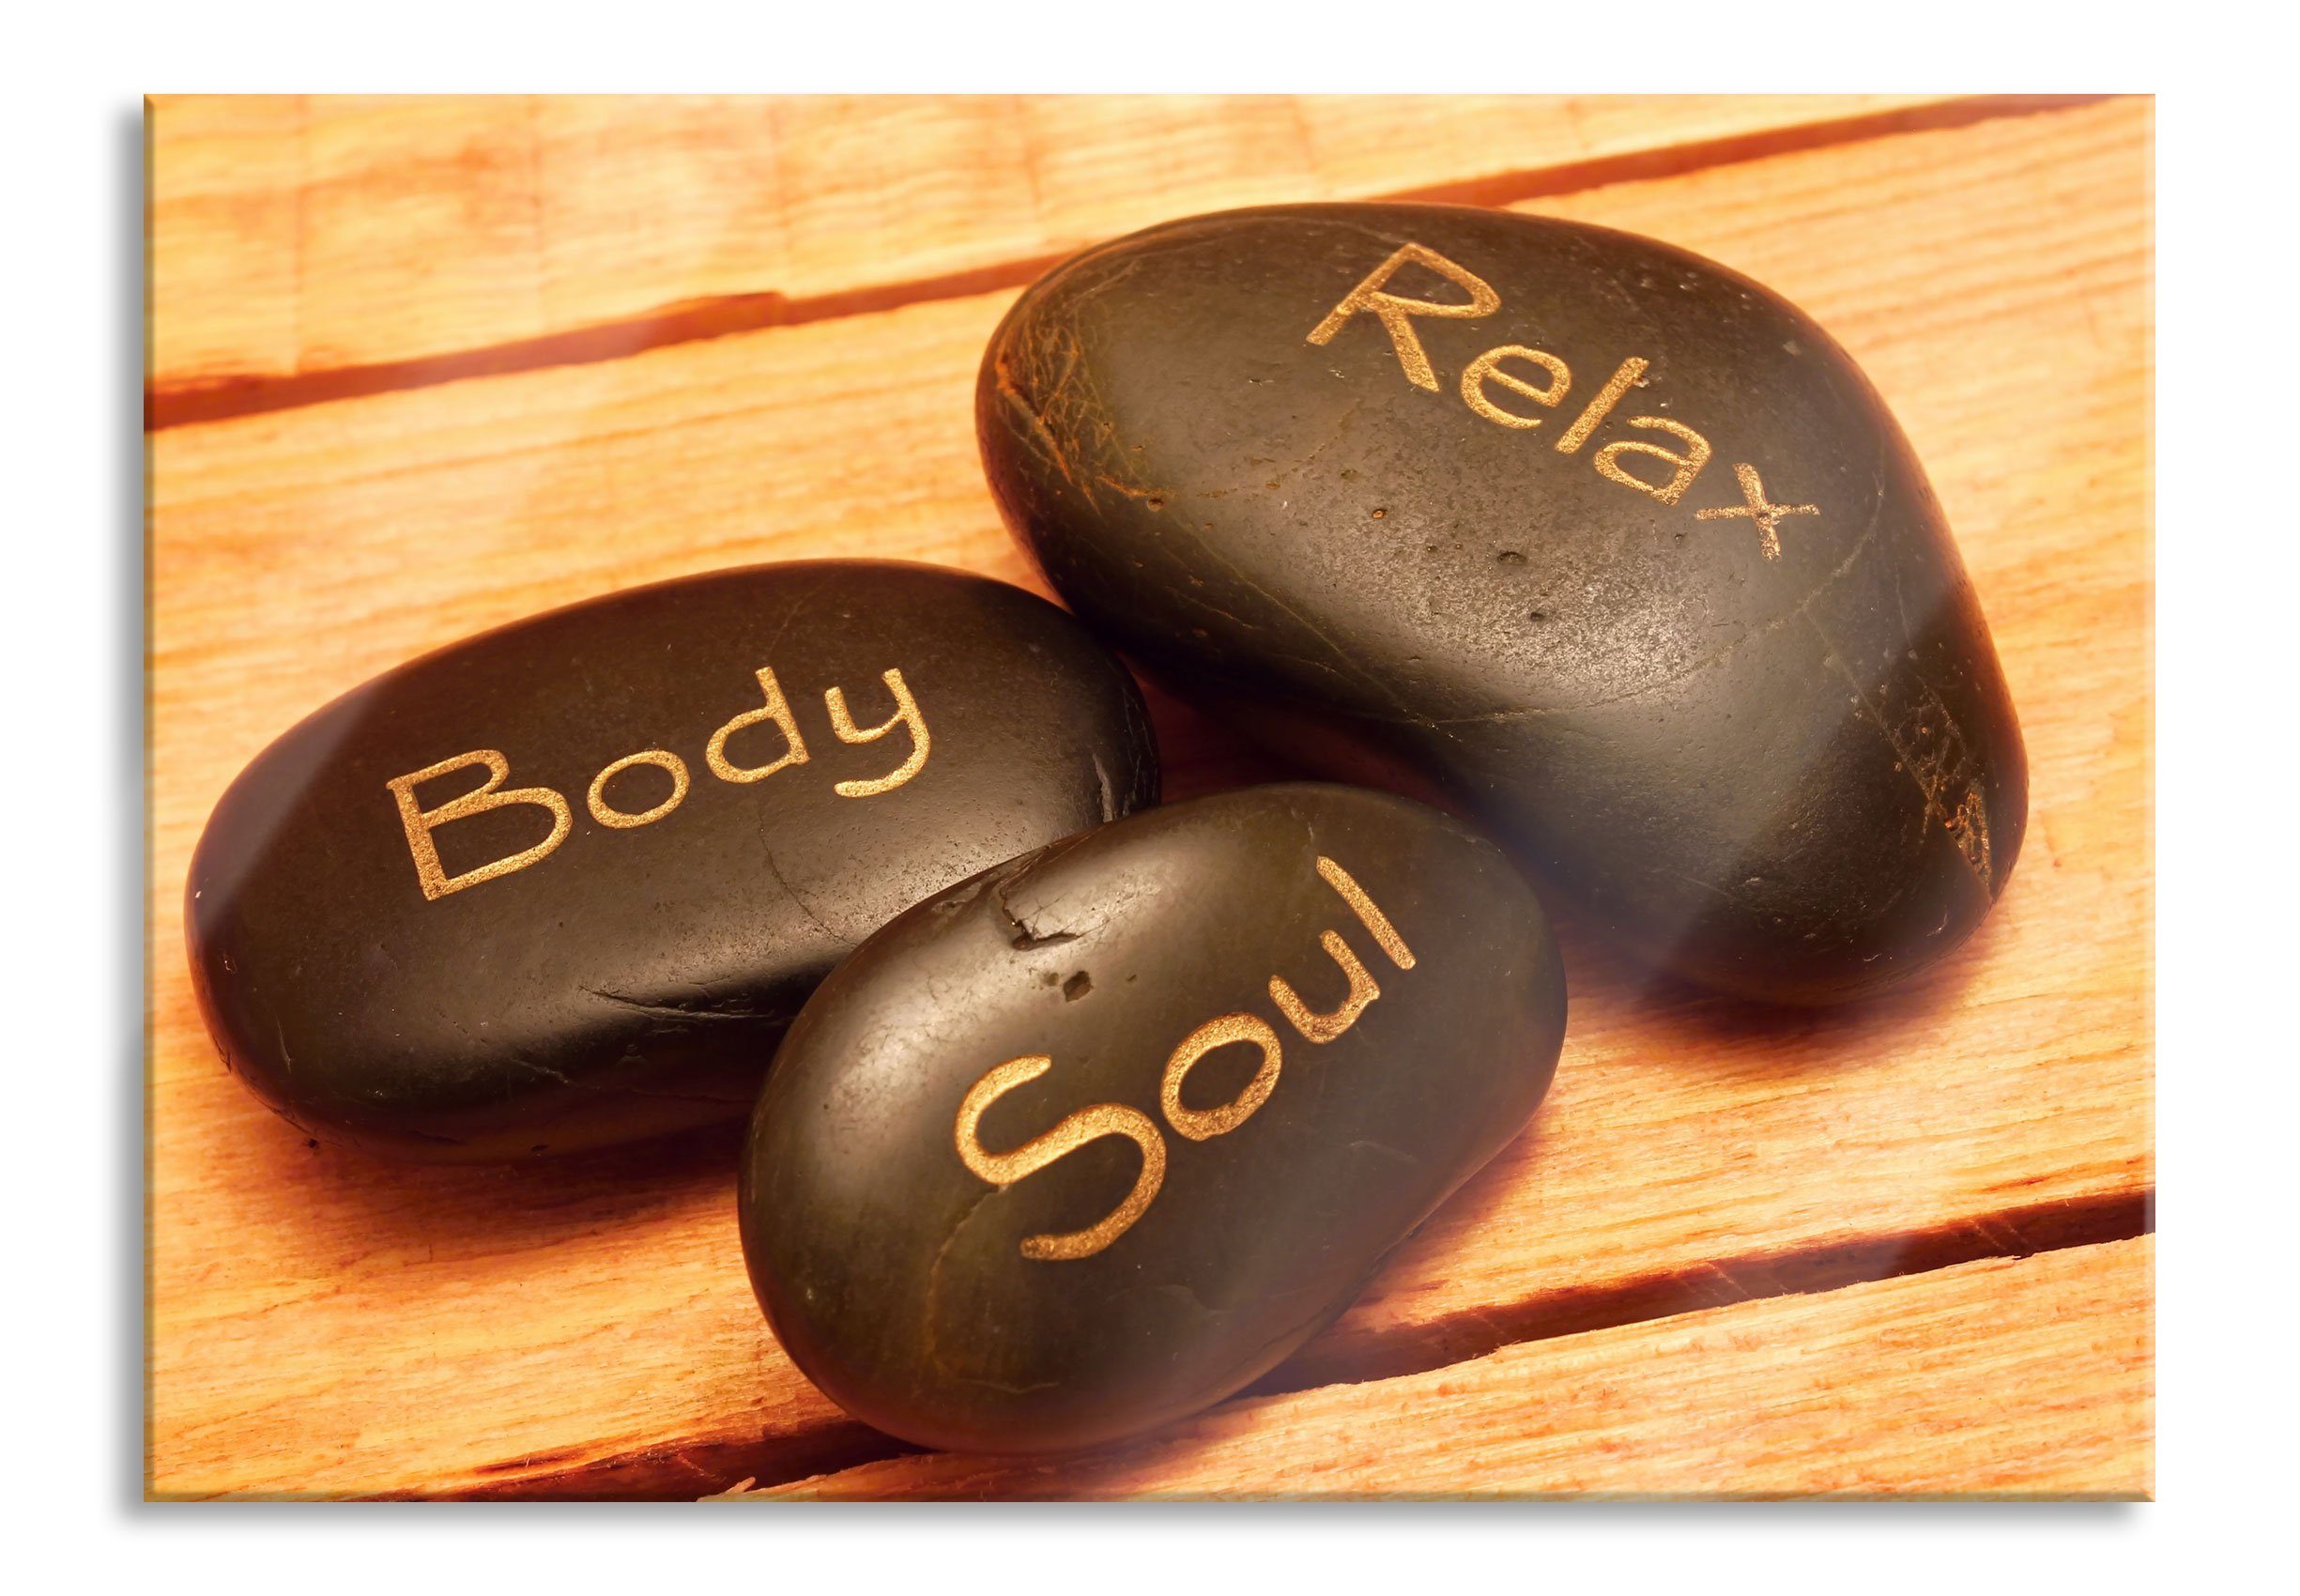 Pixxprint Glasbild Wellness Body Soul Relax, Wellness Body Soul Relax (1 St), Glasbild aus Echtglas, inkl. Aufhängungen und Abstandshalter